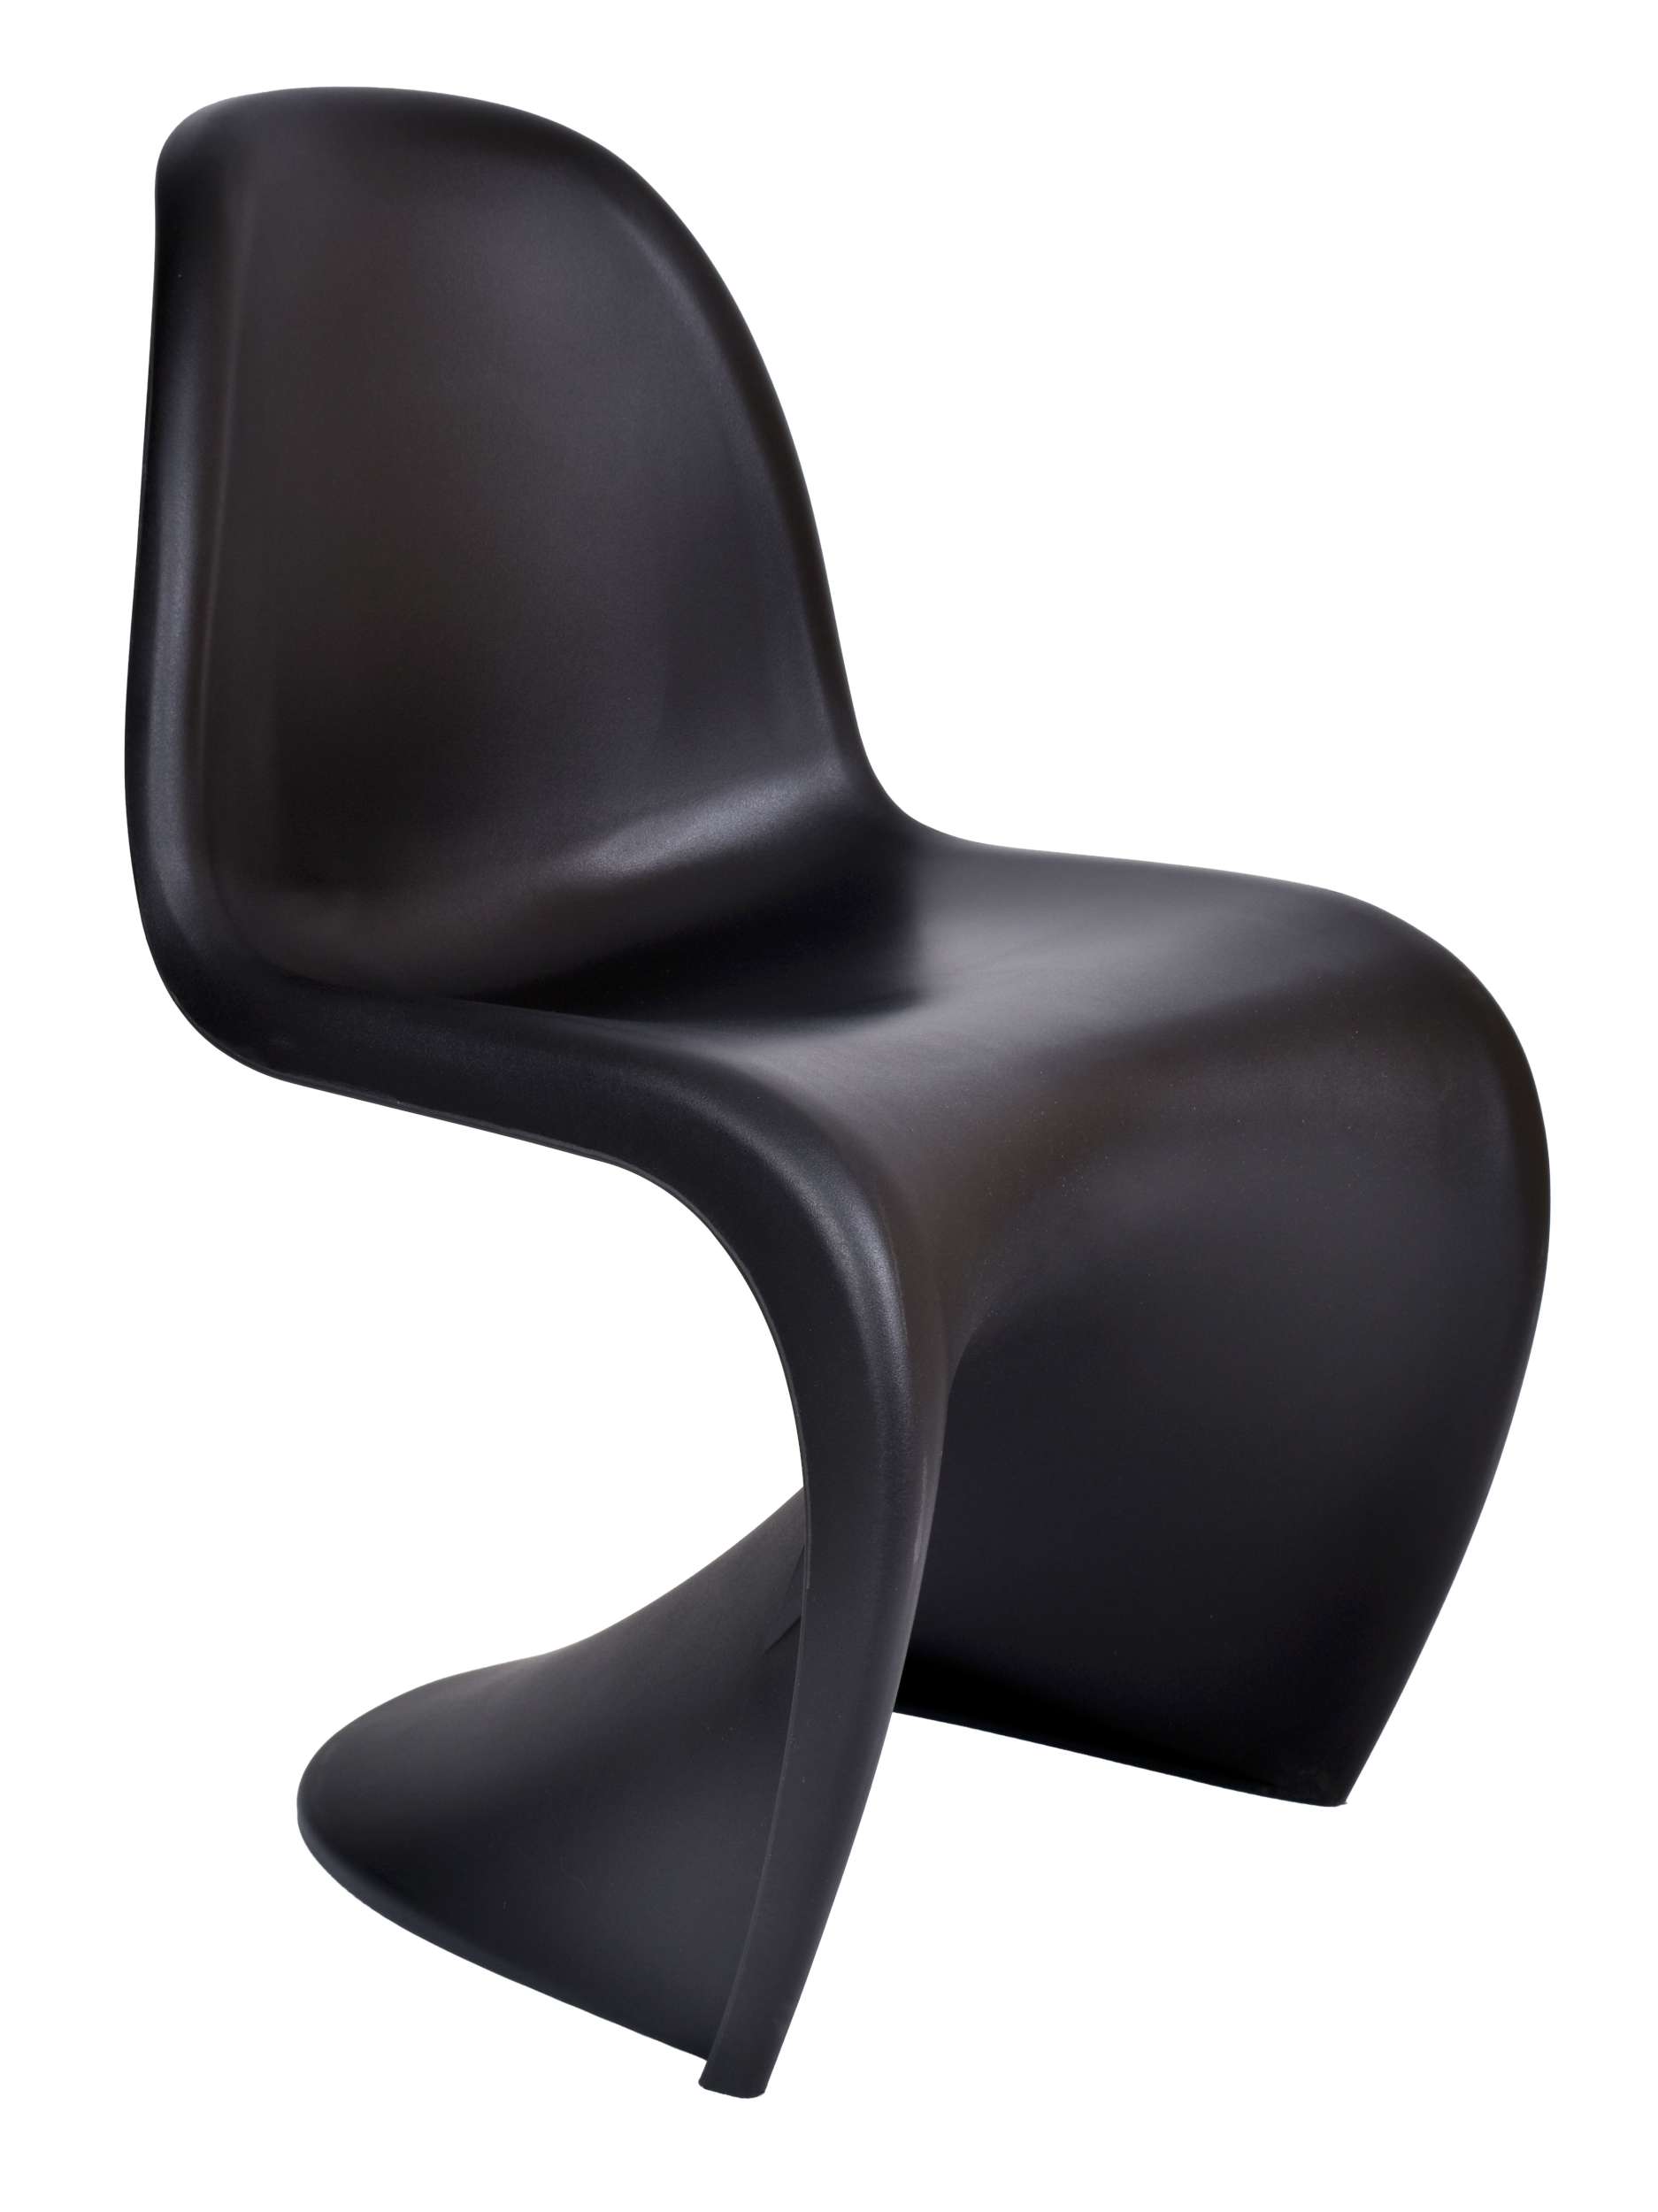 casper krzeslo nowoczesne